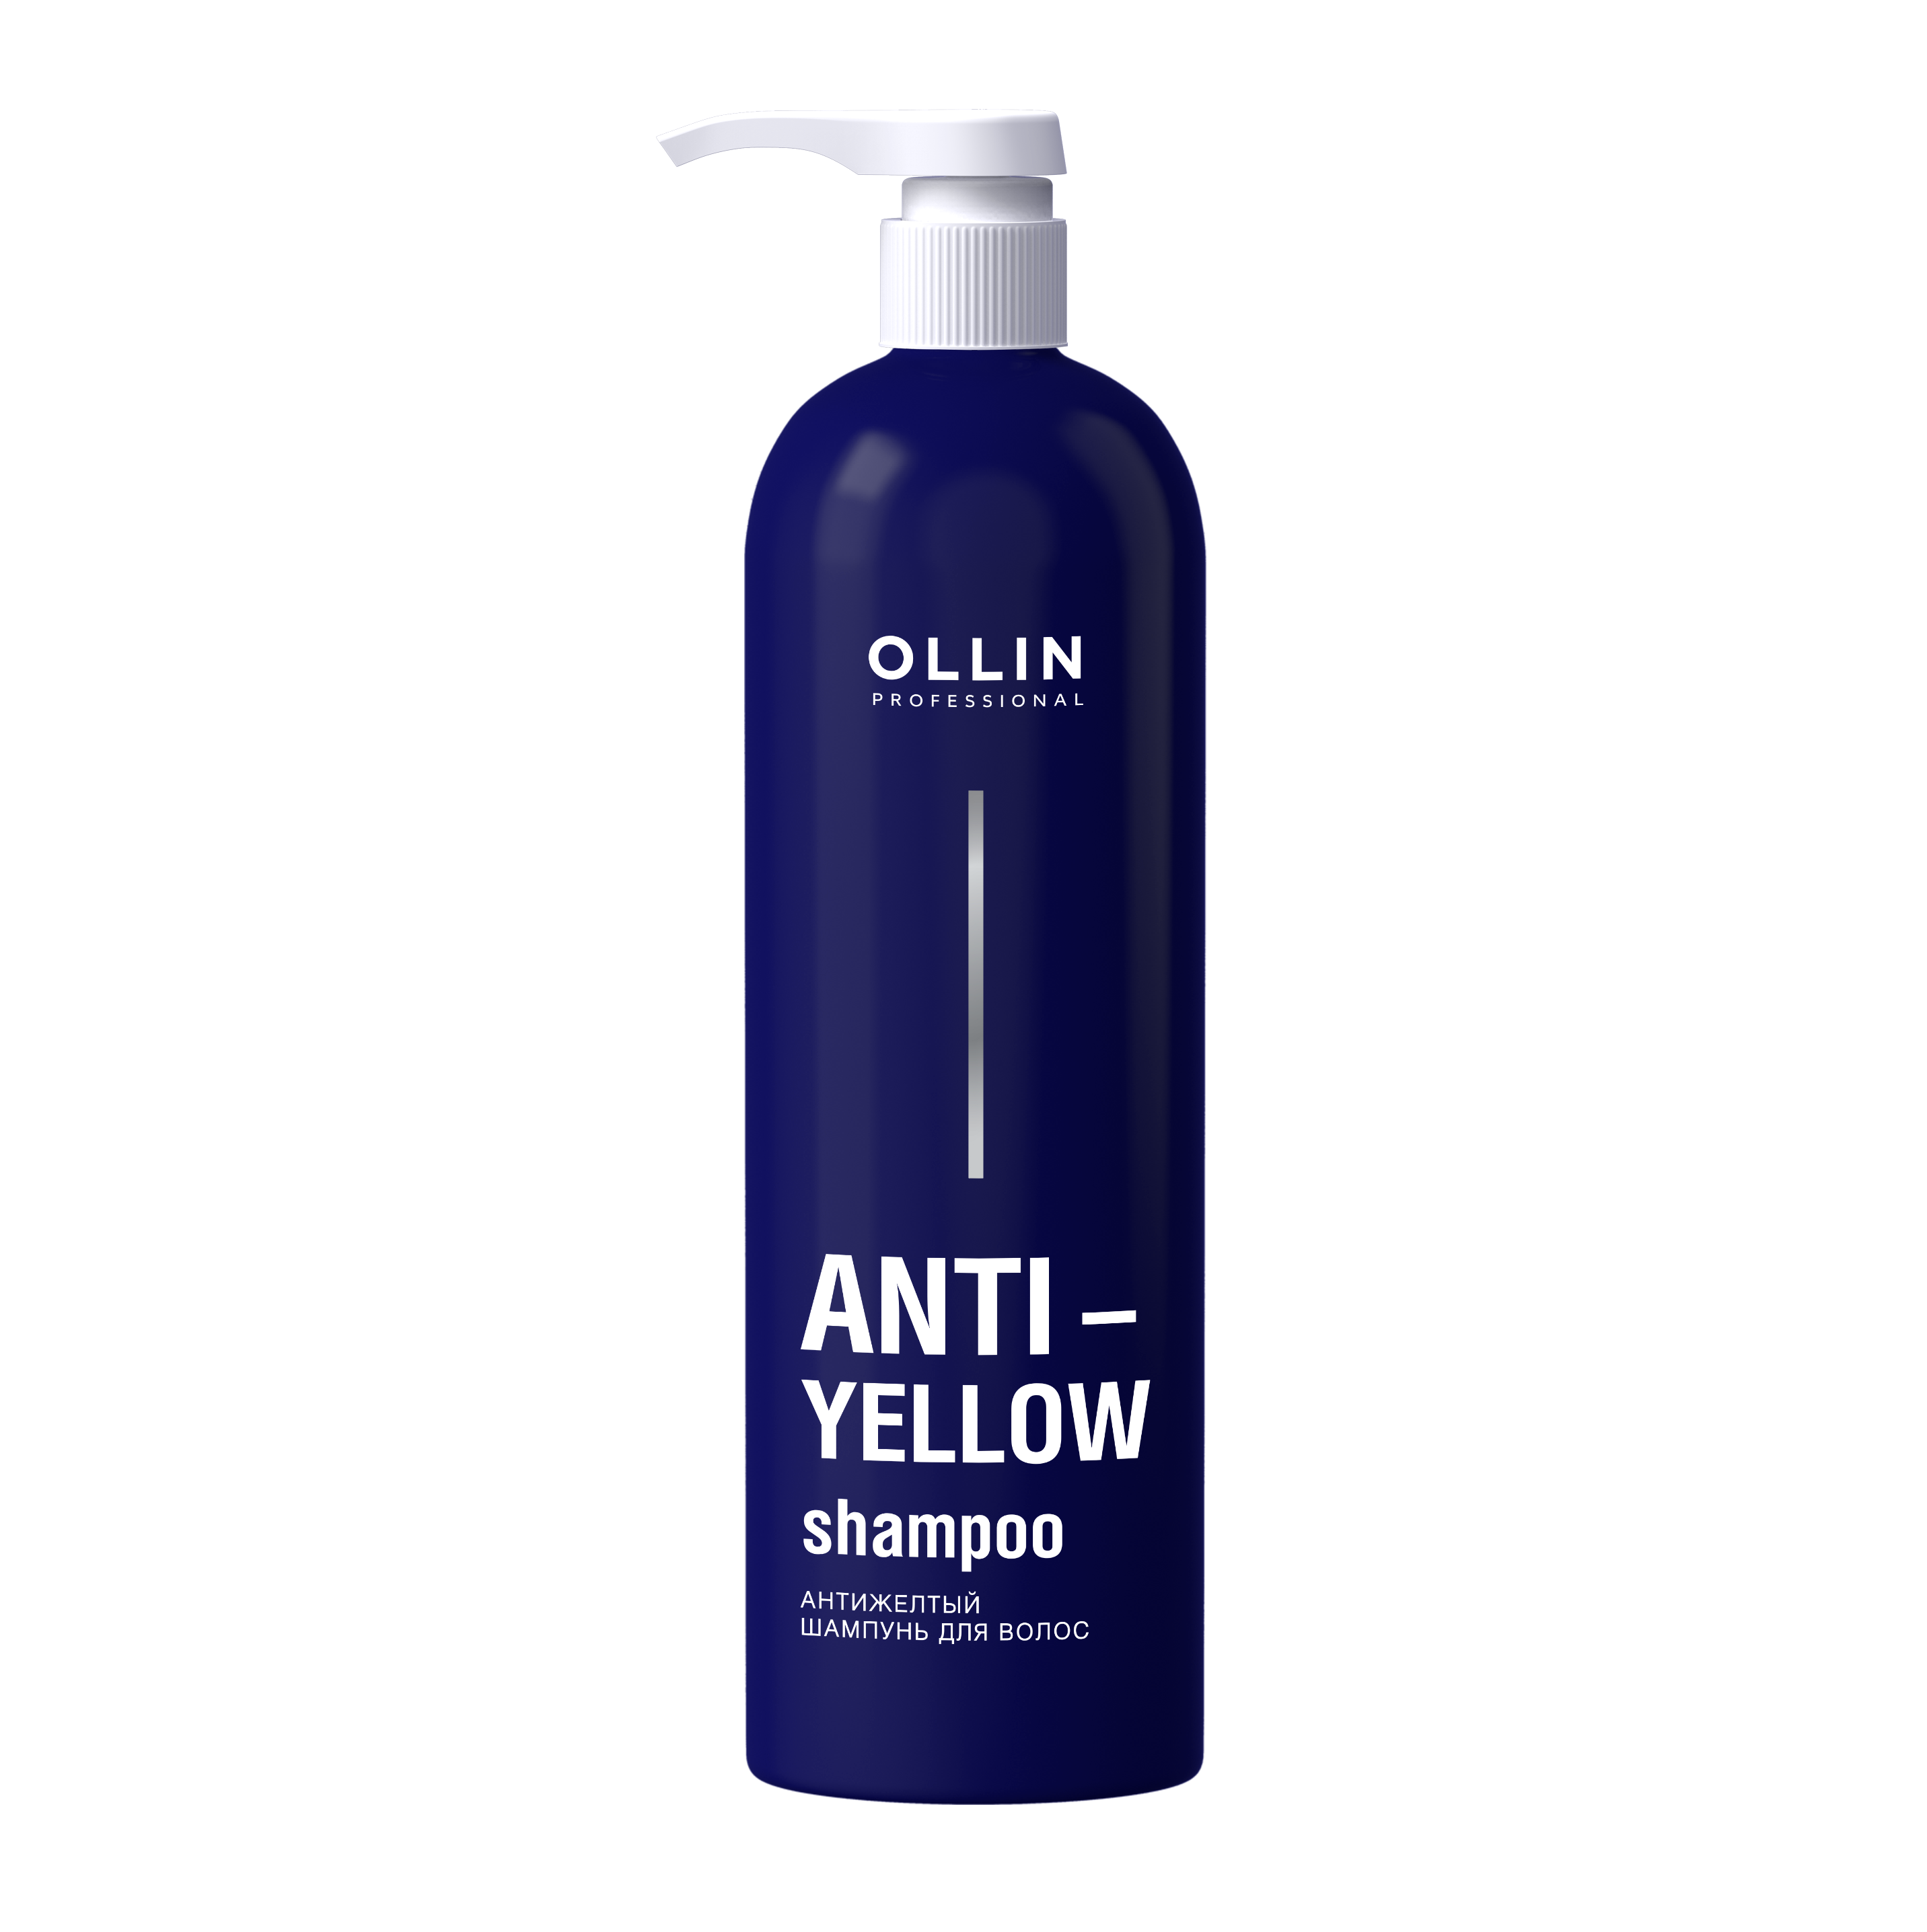 OLLIN, Антижелтый шампунь для волос Anti-Yellow, 500 мл.